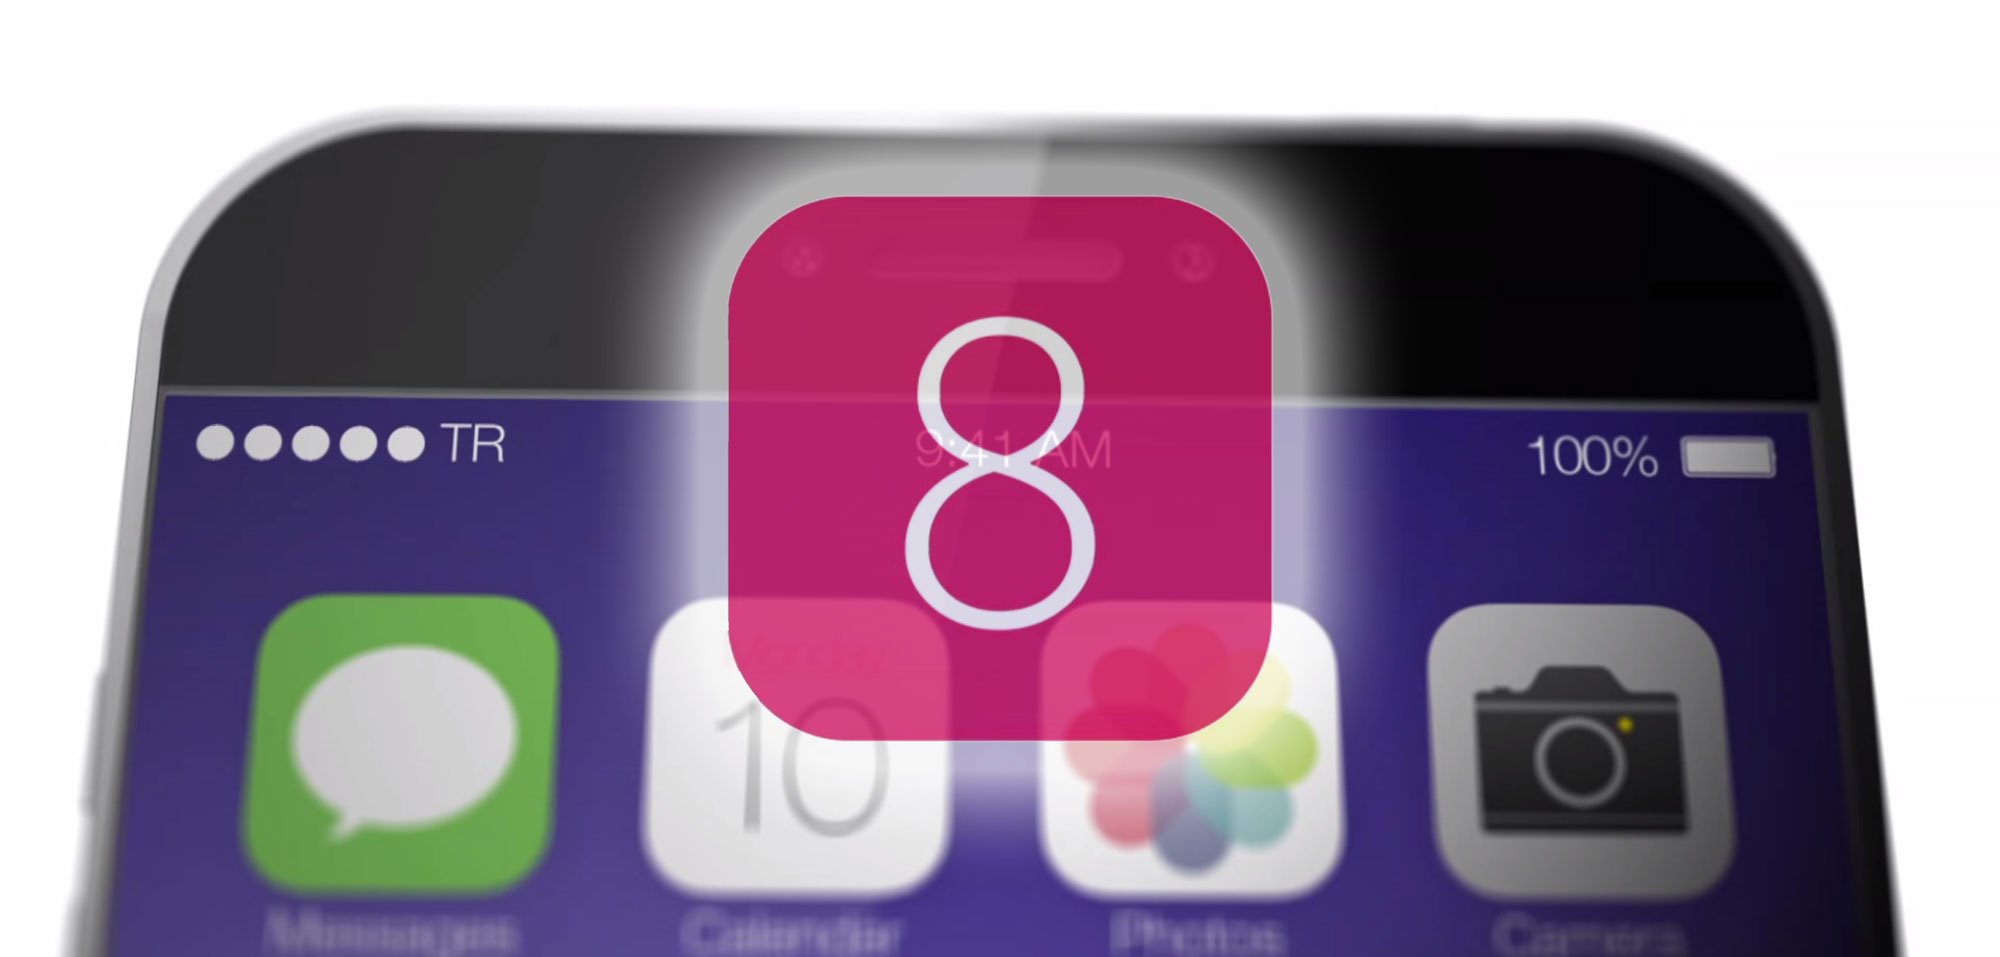 iOS 8: Neue Funktionen erst mit iOS 8.1 statt iOS 8? 3